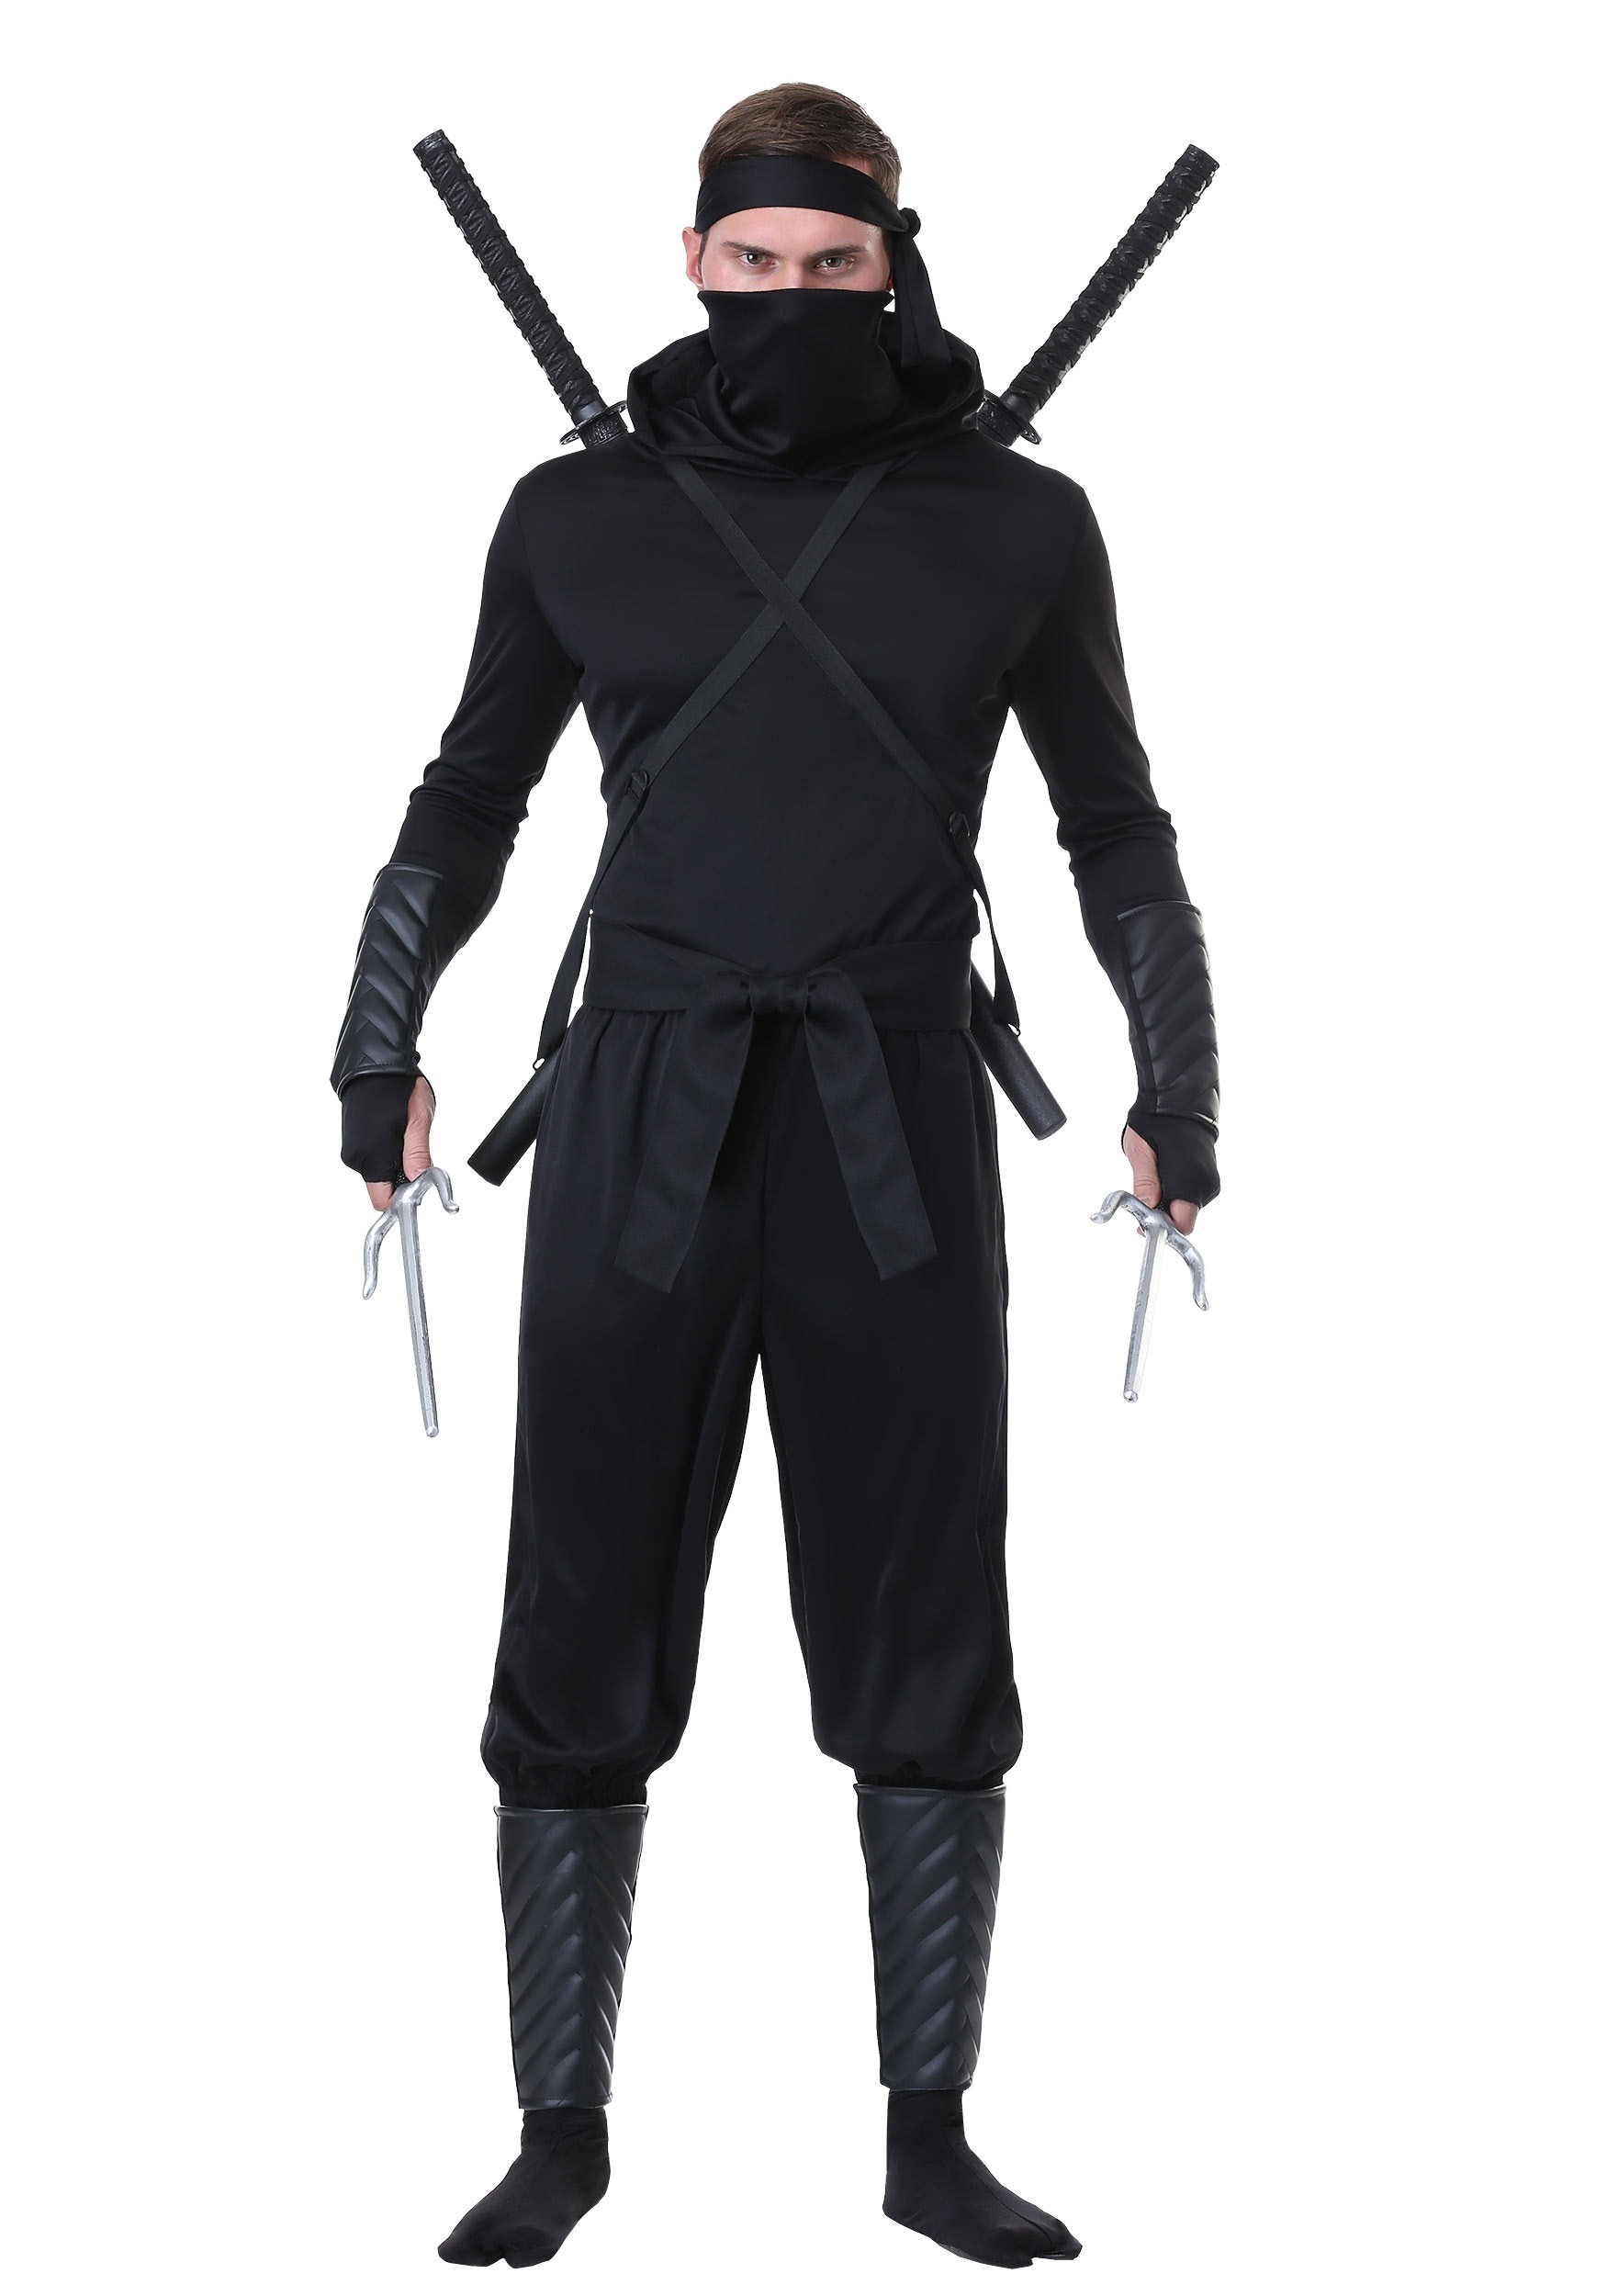 Stalker Shinobi Ninja Costume for Adult's